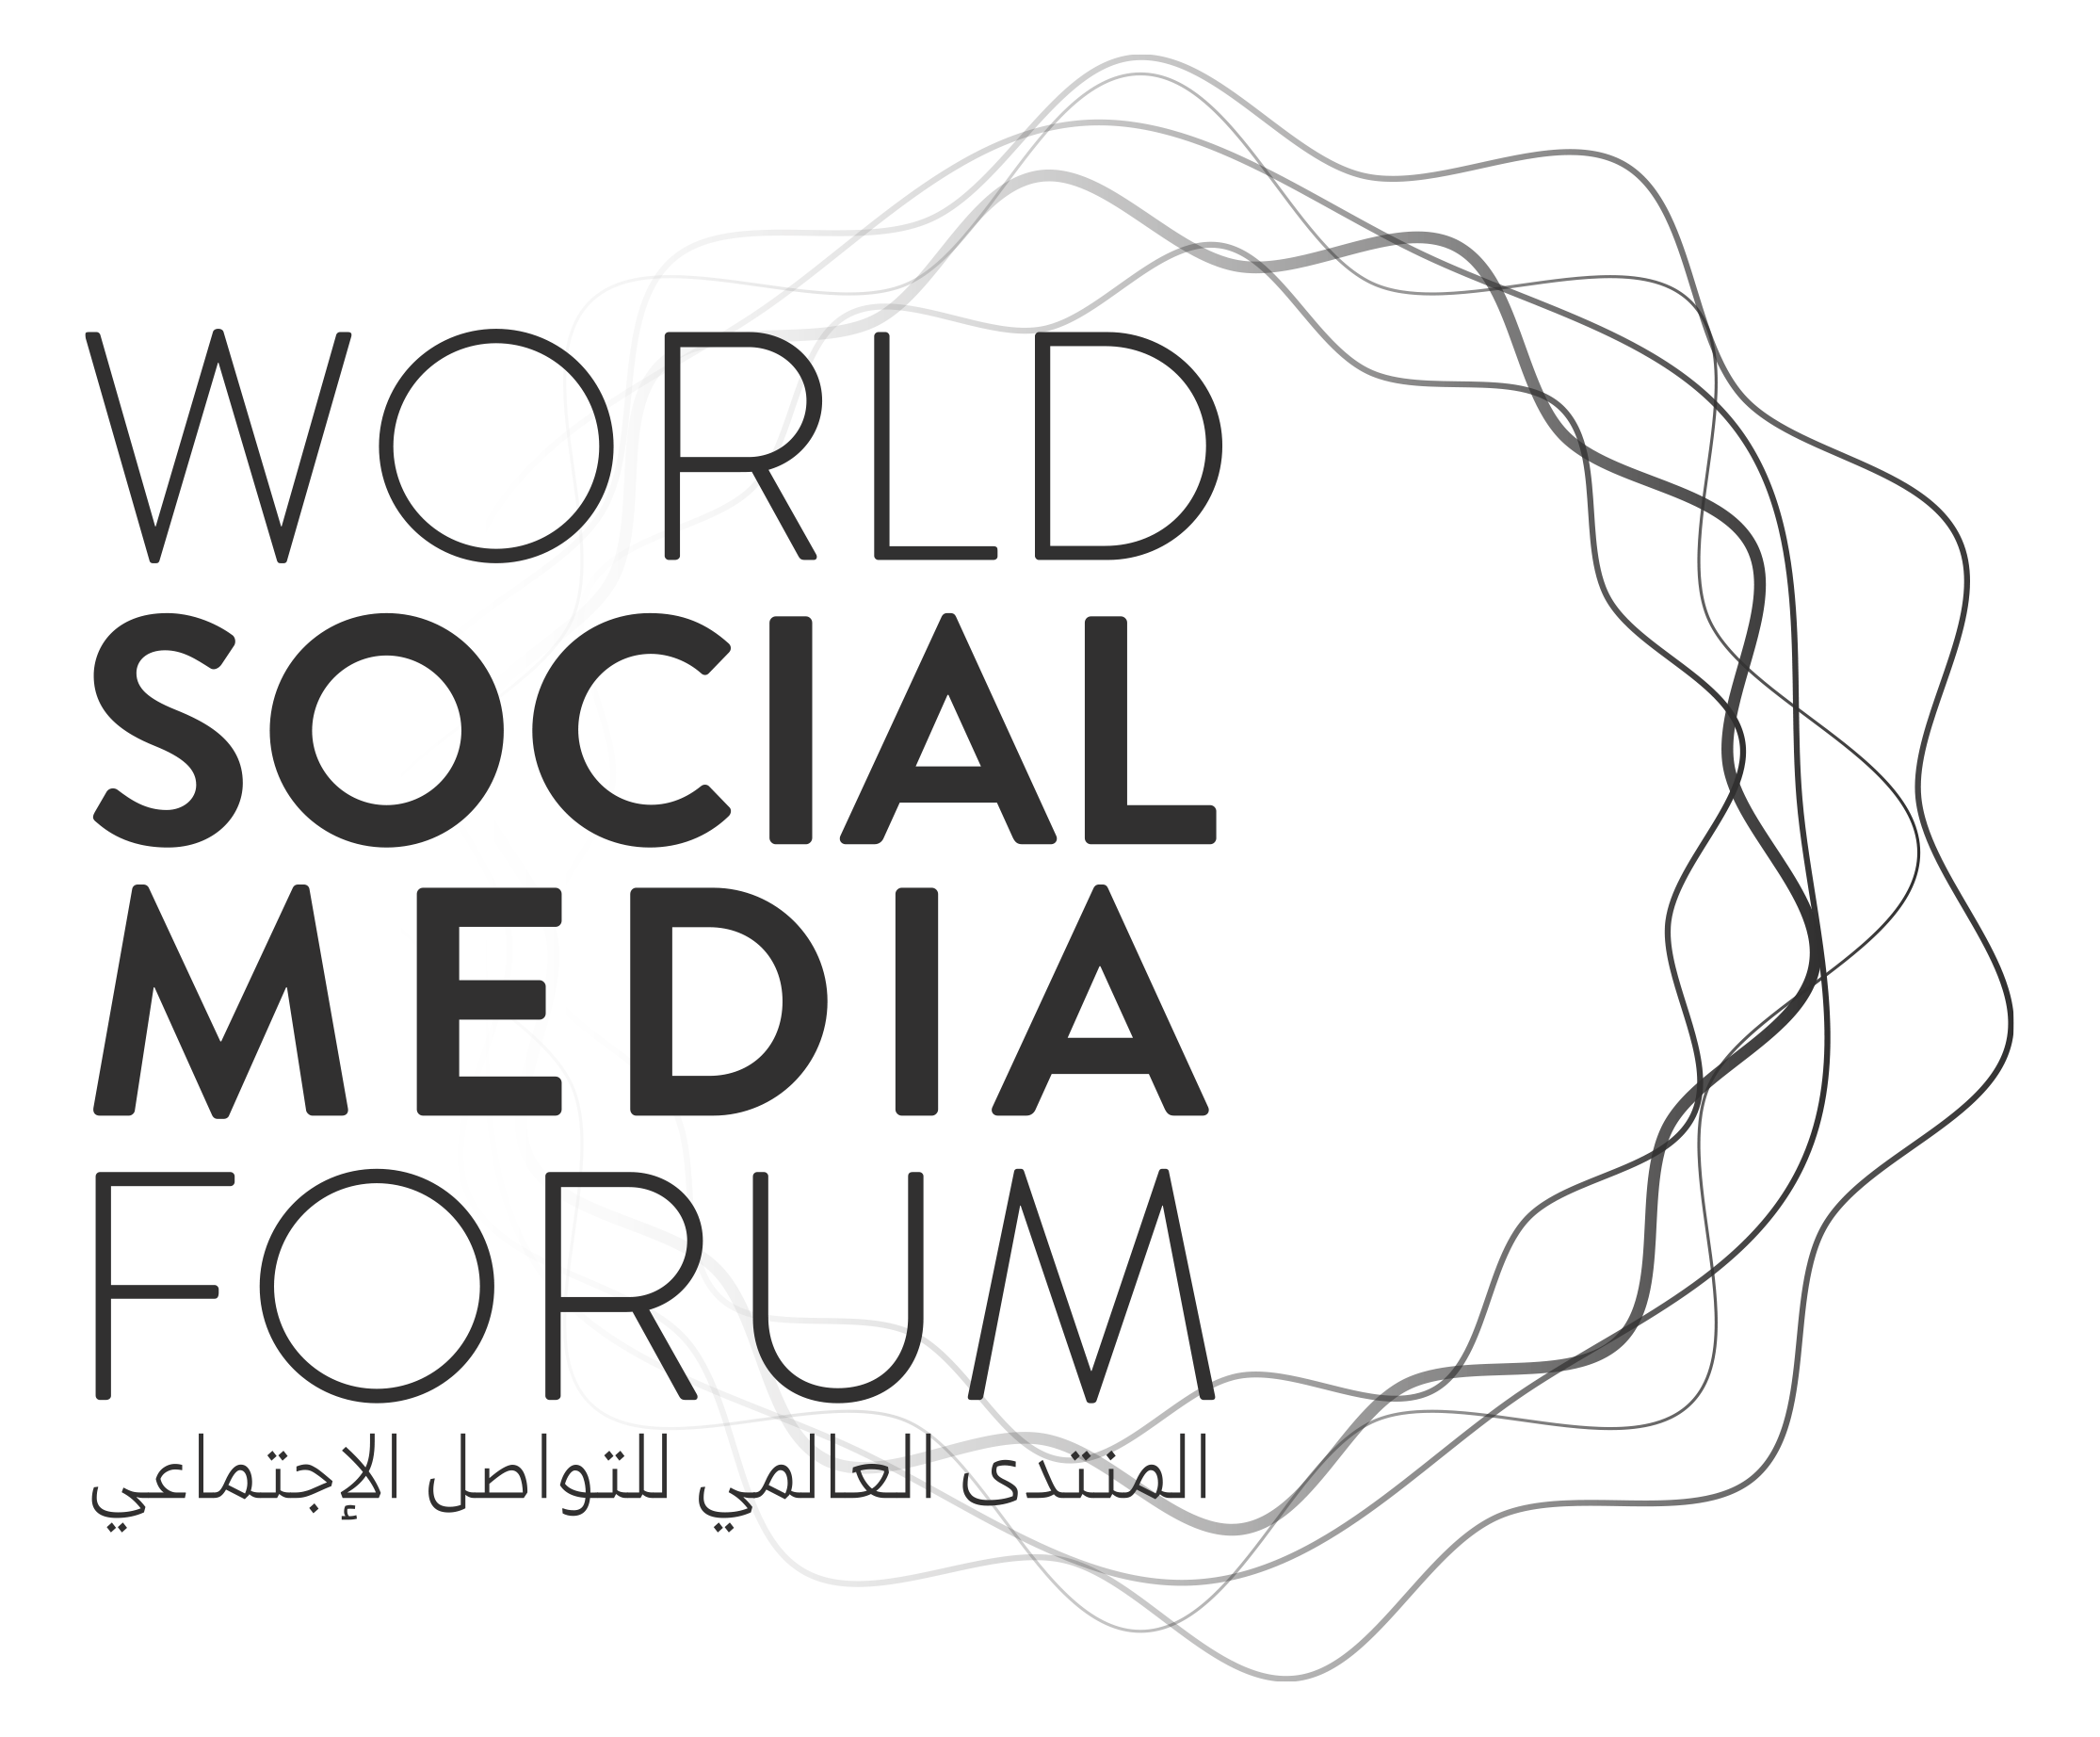 World Social Media Forum